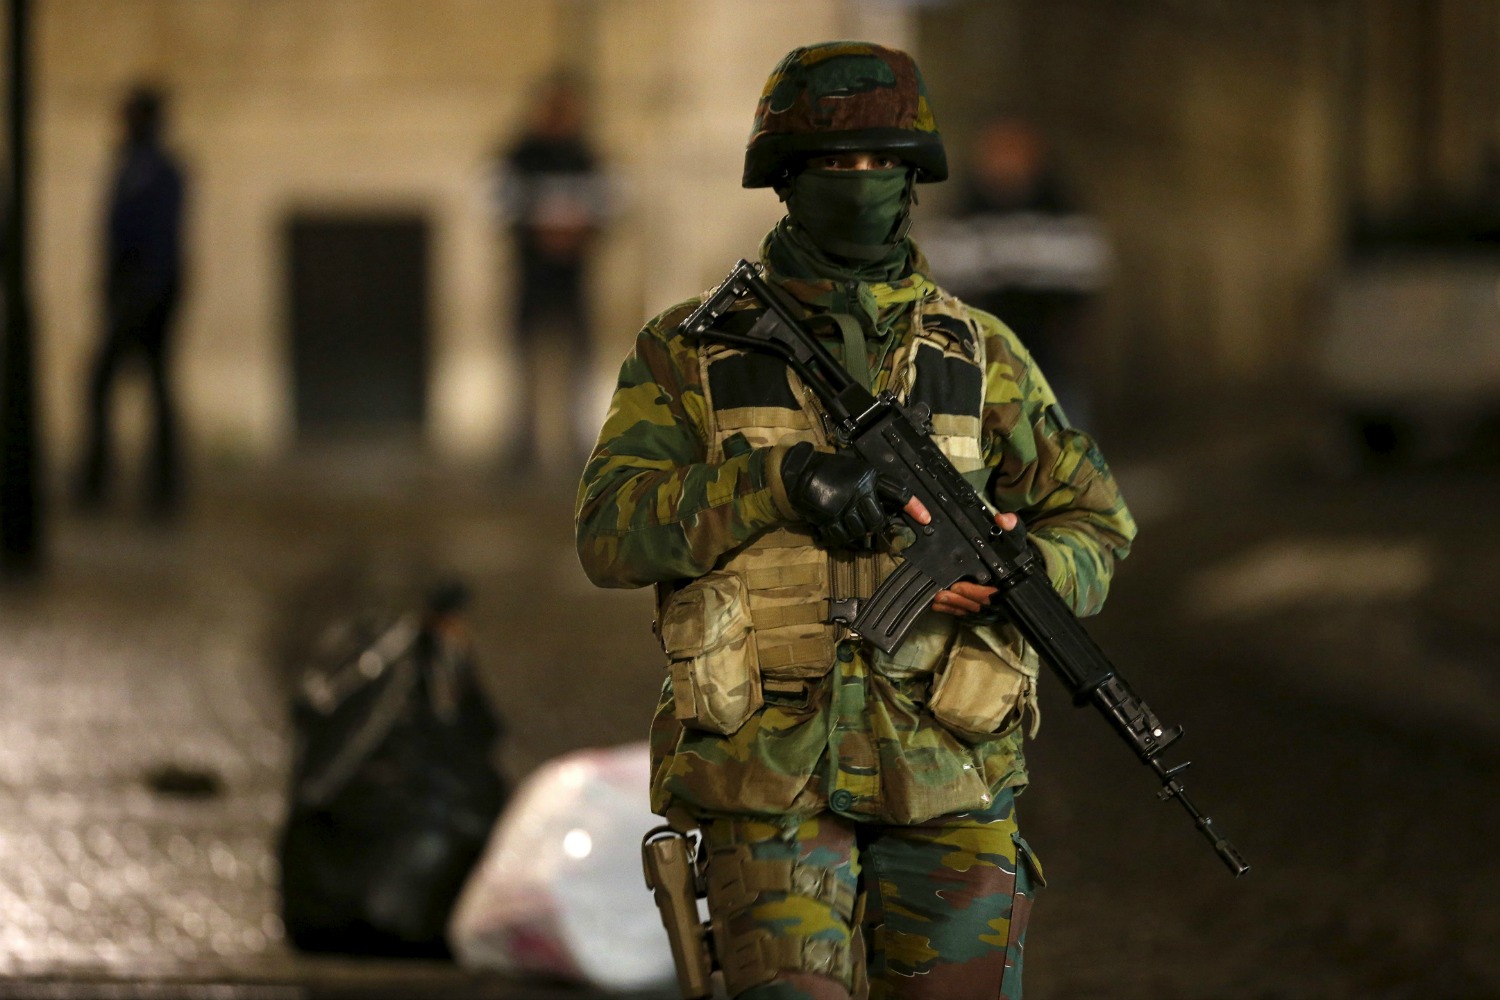 Bruselas bajo ‘riesgo extremo’ de atentado lanza una gran operación policial